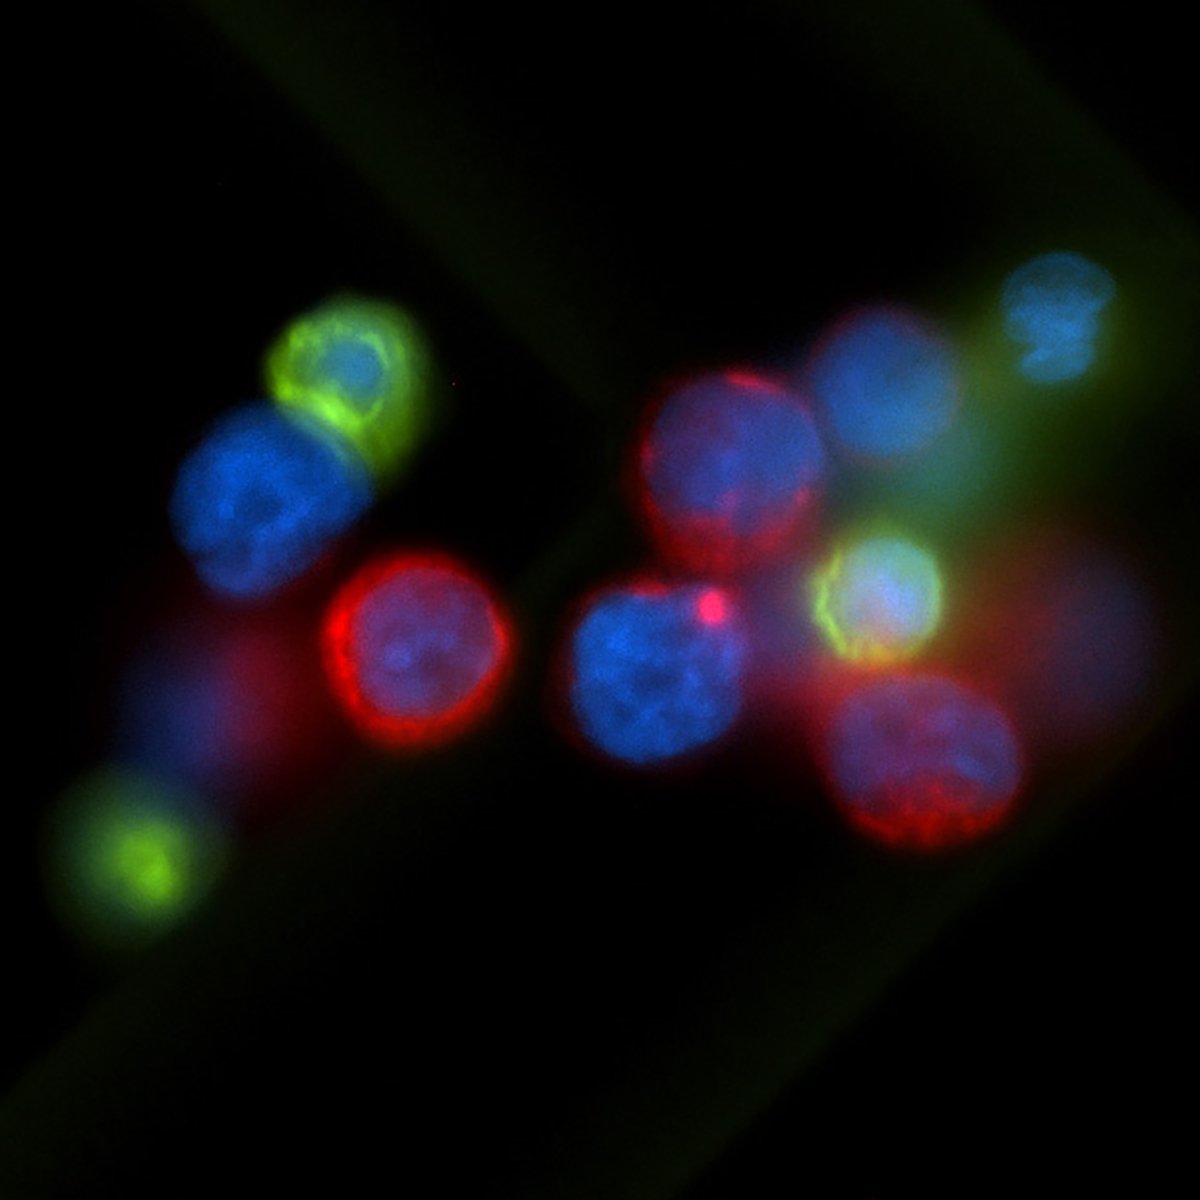 Een microfoto toont verschillende gekleurde cellen als ballen op een zwarte achtergrond.  Het midden van elke cel lijkt blauw met de kankercellen bekleed met rode en witte bloedcellen bekleed met groen.